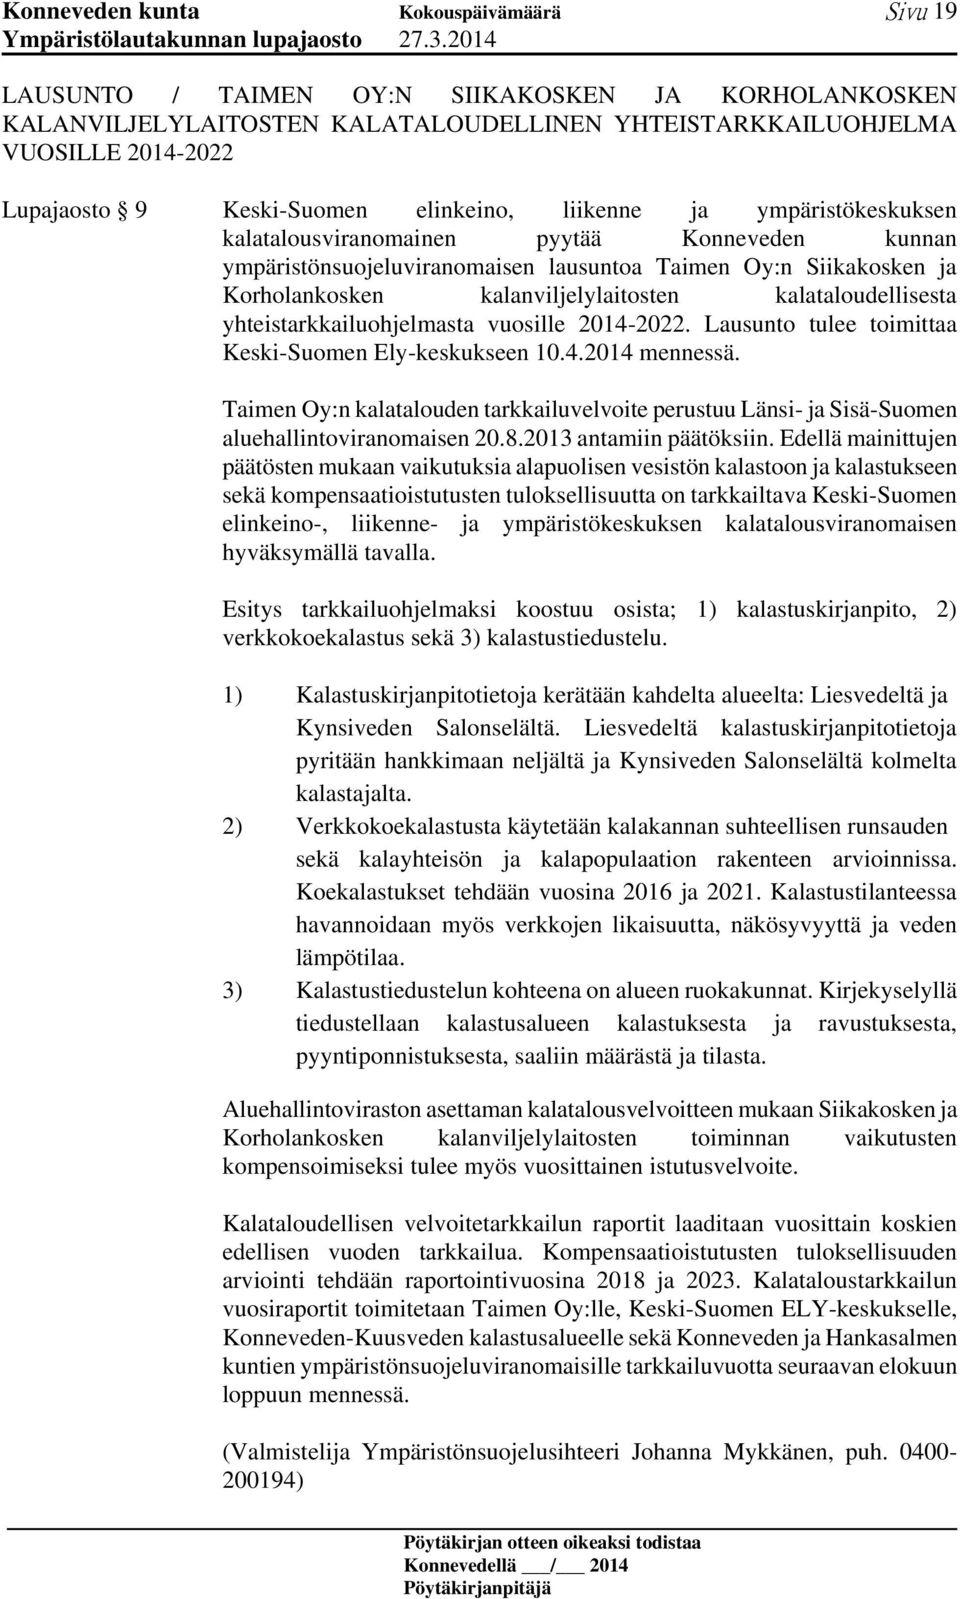 yhteistarkkailuohjelmasta vuosille 2014-2022. Lausunto tulee toimittaa Keski-Suomen Ely-keskukseen 10.4.2014 mennessä.